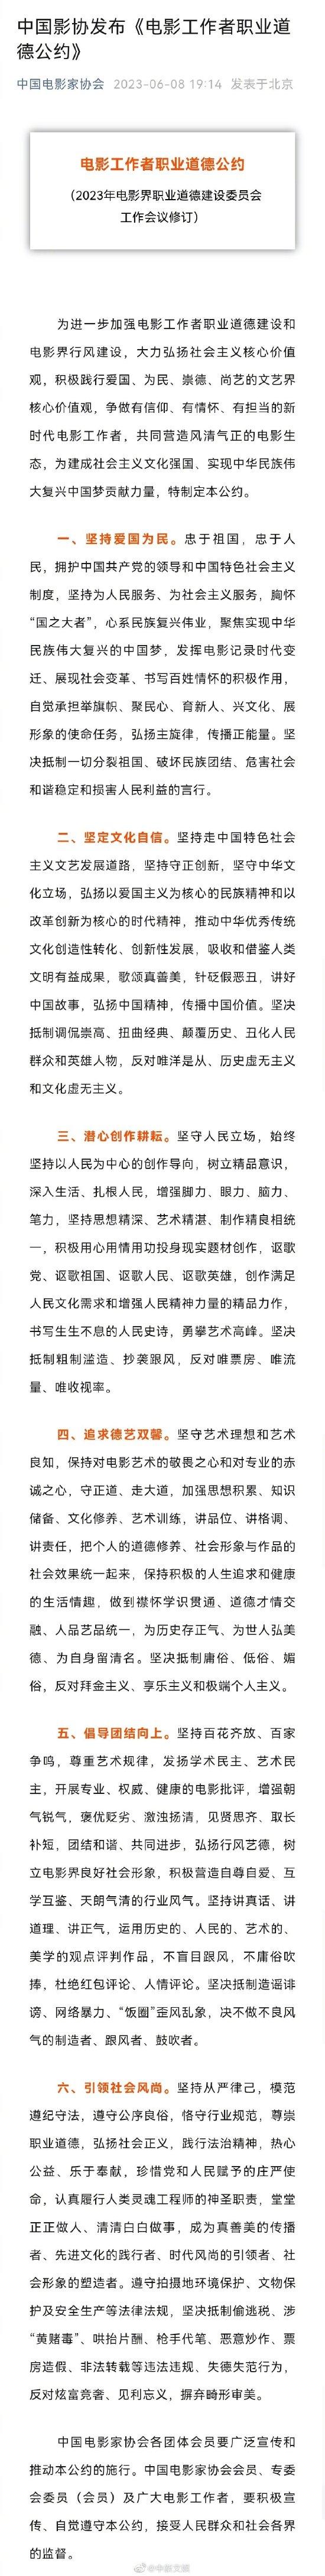 中国电影家协会发布《电影工作者职业道德公约》